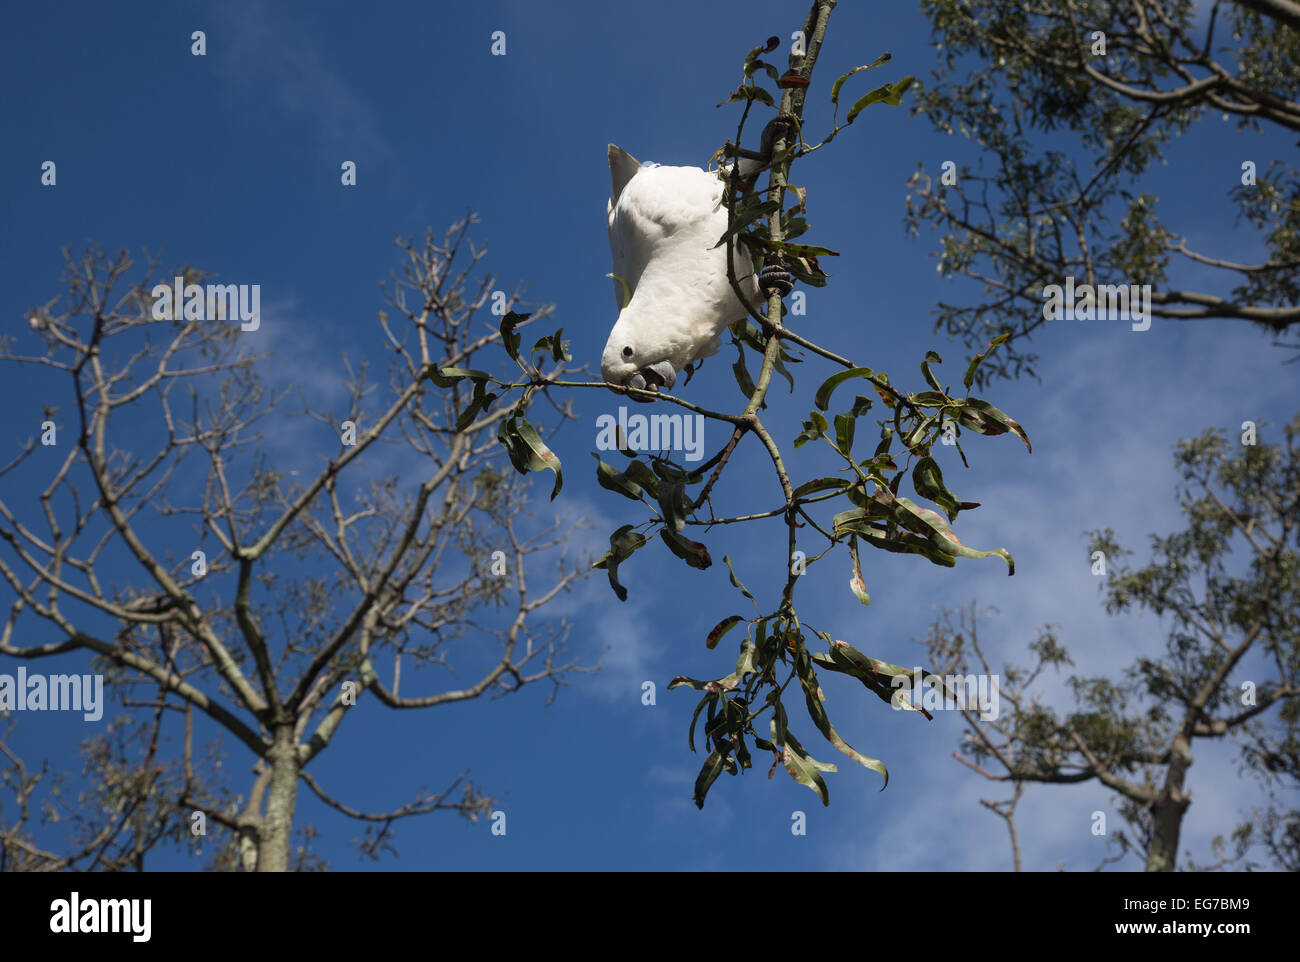 Le cacatoès soufre photographié dans le Jardin botanique de Sydney Australie Banque D'Images